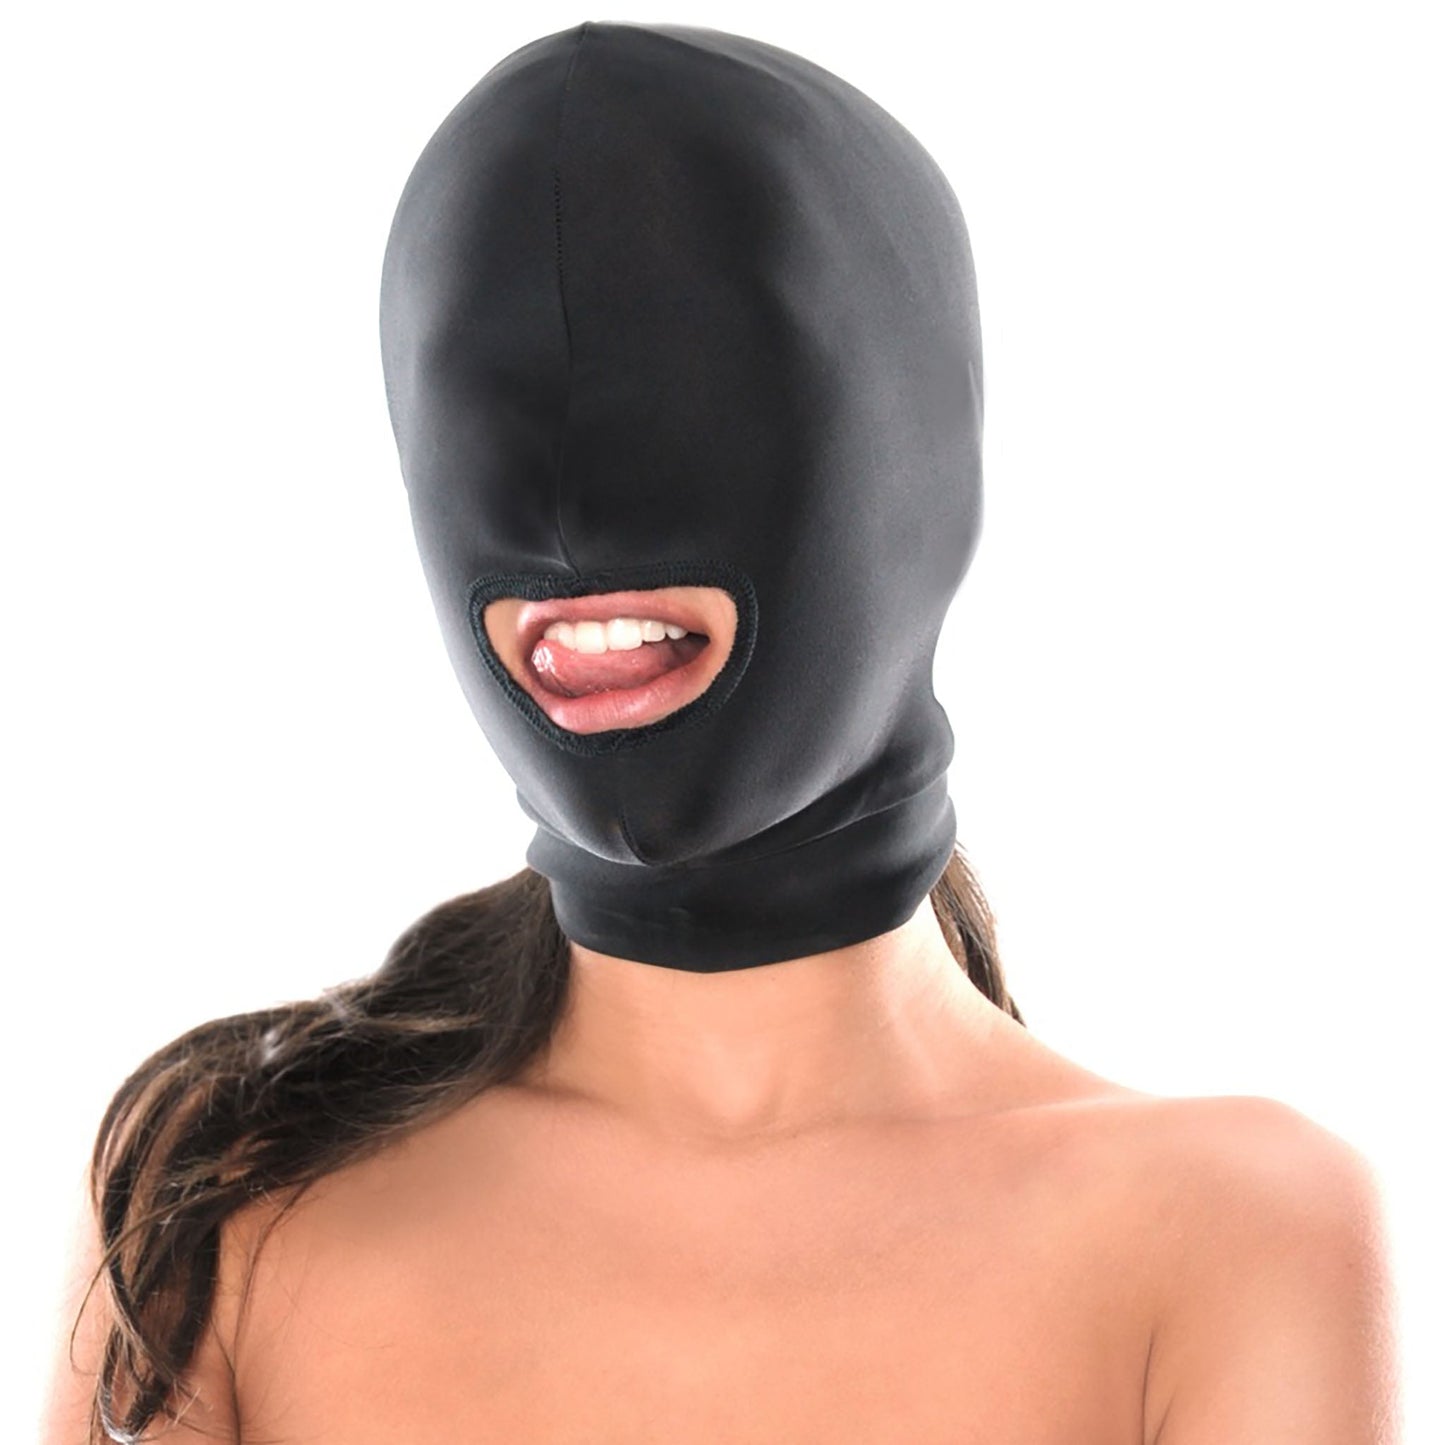 Spandex Open Mouth Hood, schwarze Kopfmaske mit einem Loch für den Mund von ihr getragen